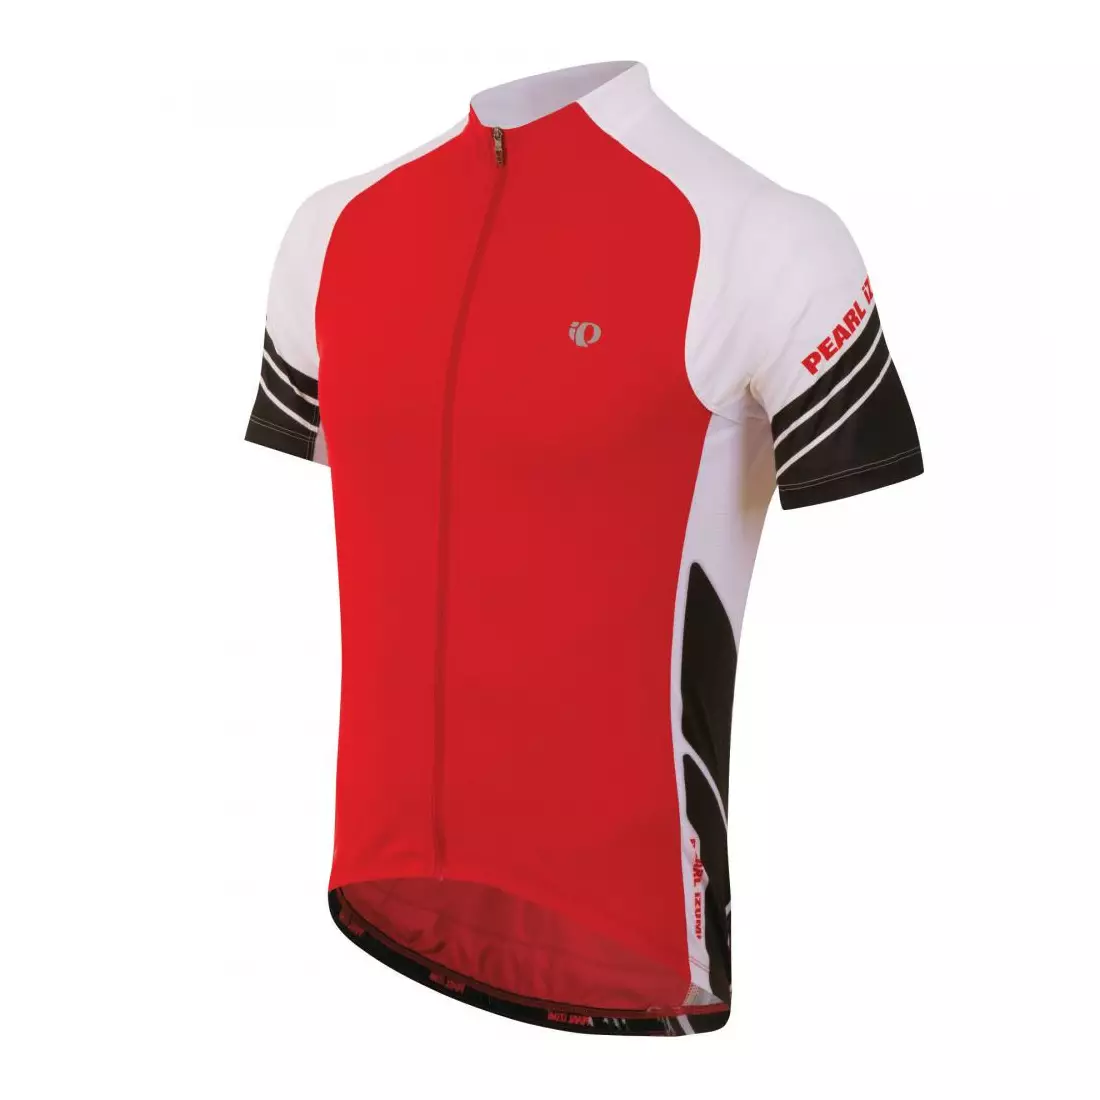 PEARL IZUMI - ELITE 11121301-3DJ - svetlý cyklistický dres, červený